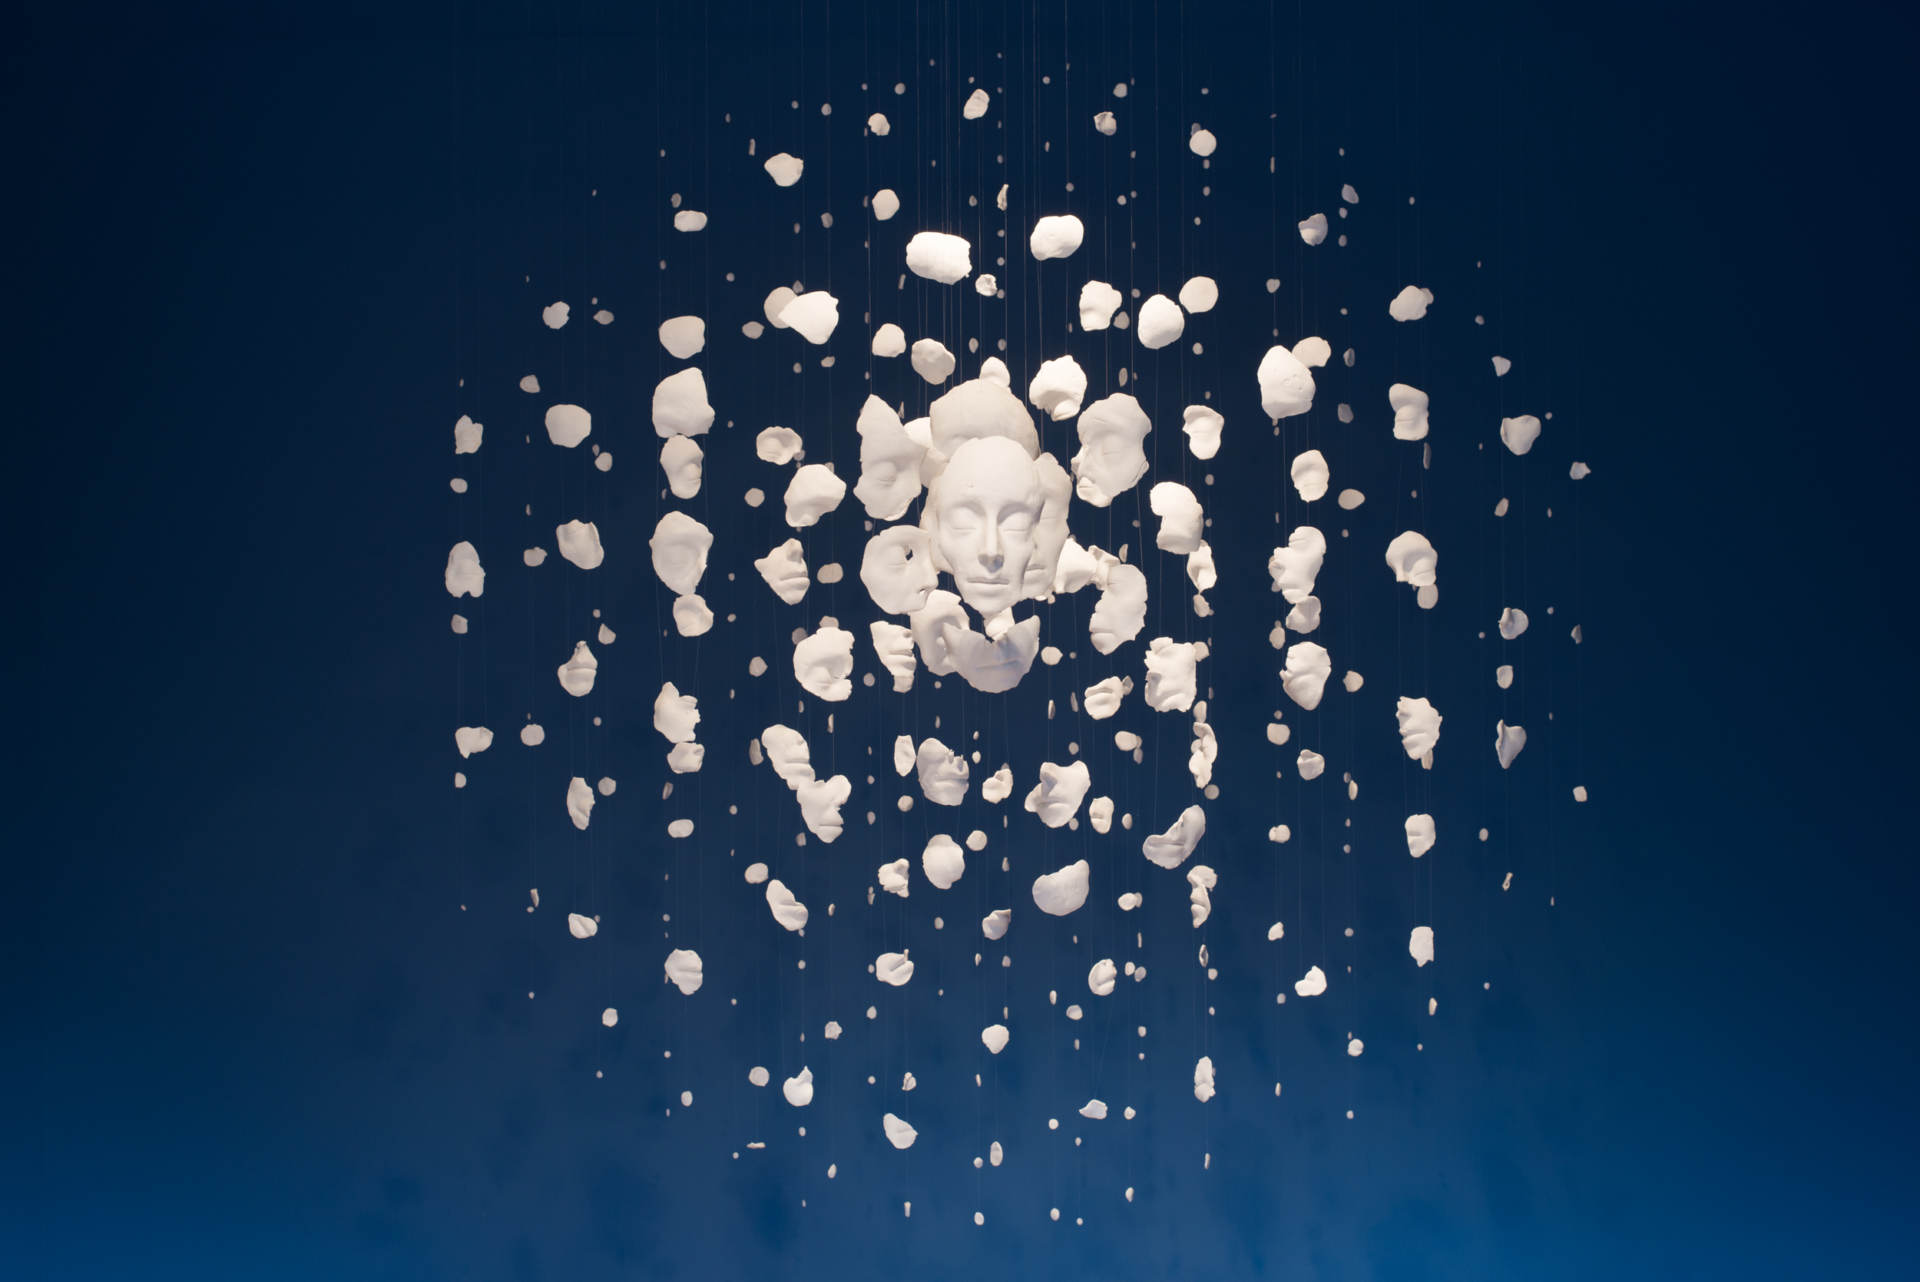 Samuel Yal, Dissolution, Porcelaine, 180x180x150 cm, 2012